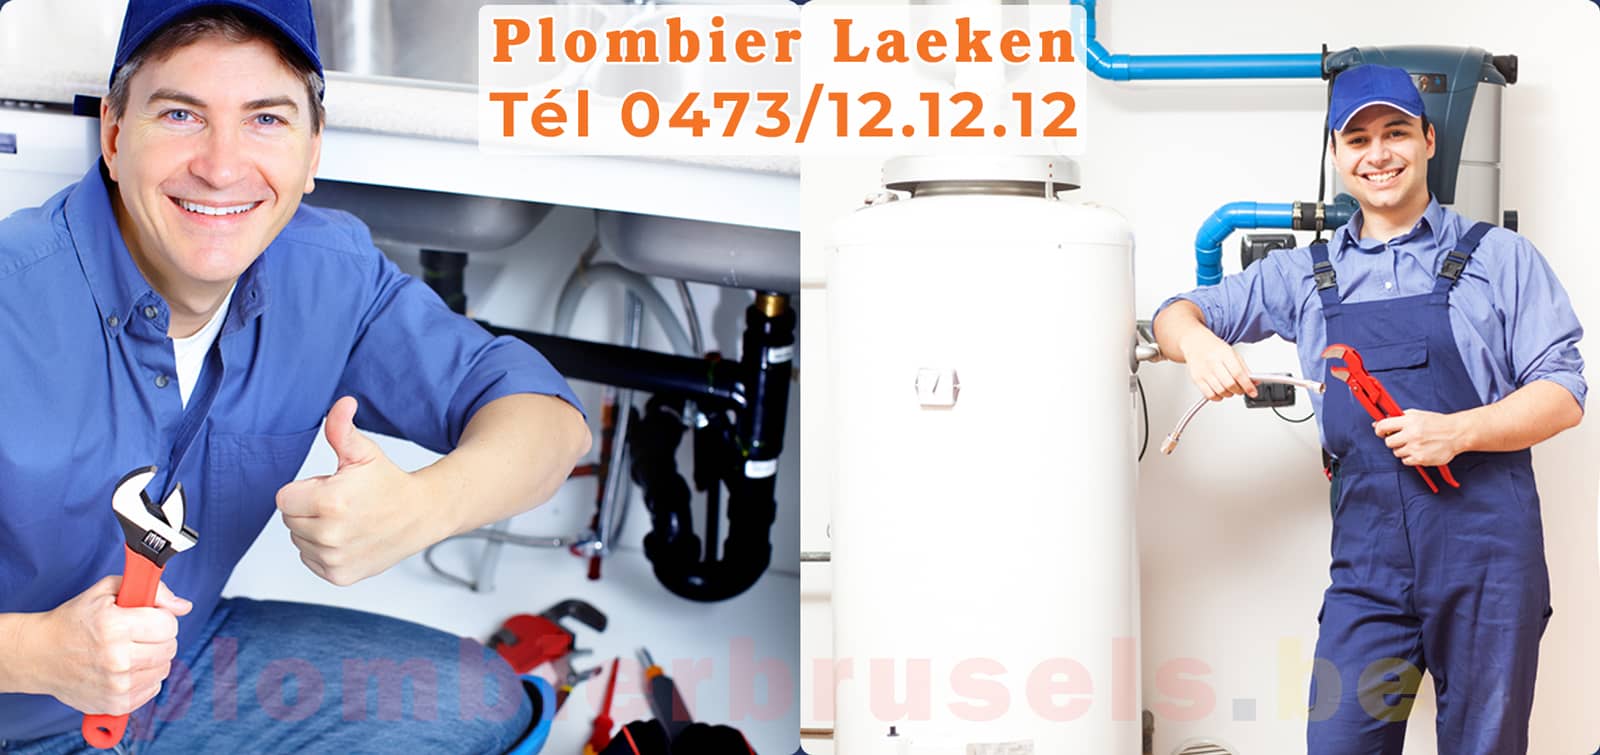 Plombier Laeken service de Plomberie tél 0473/12.12.12